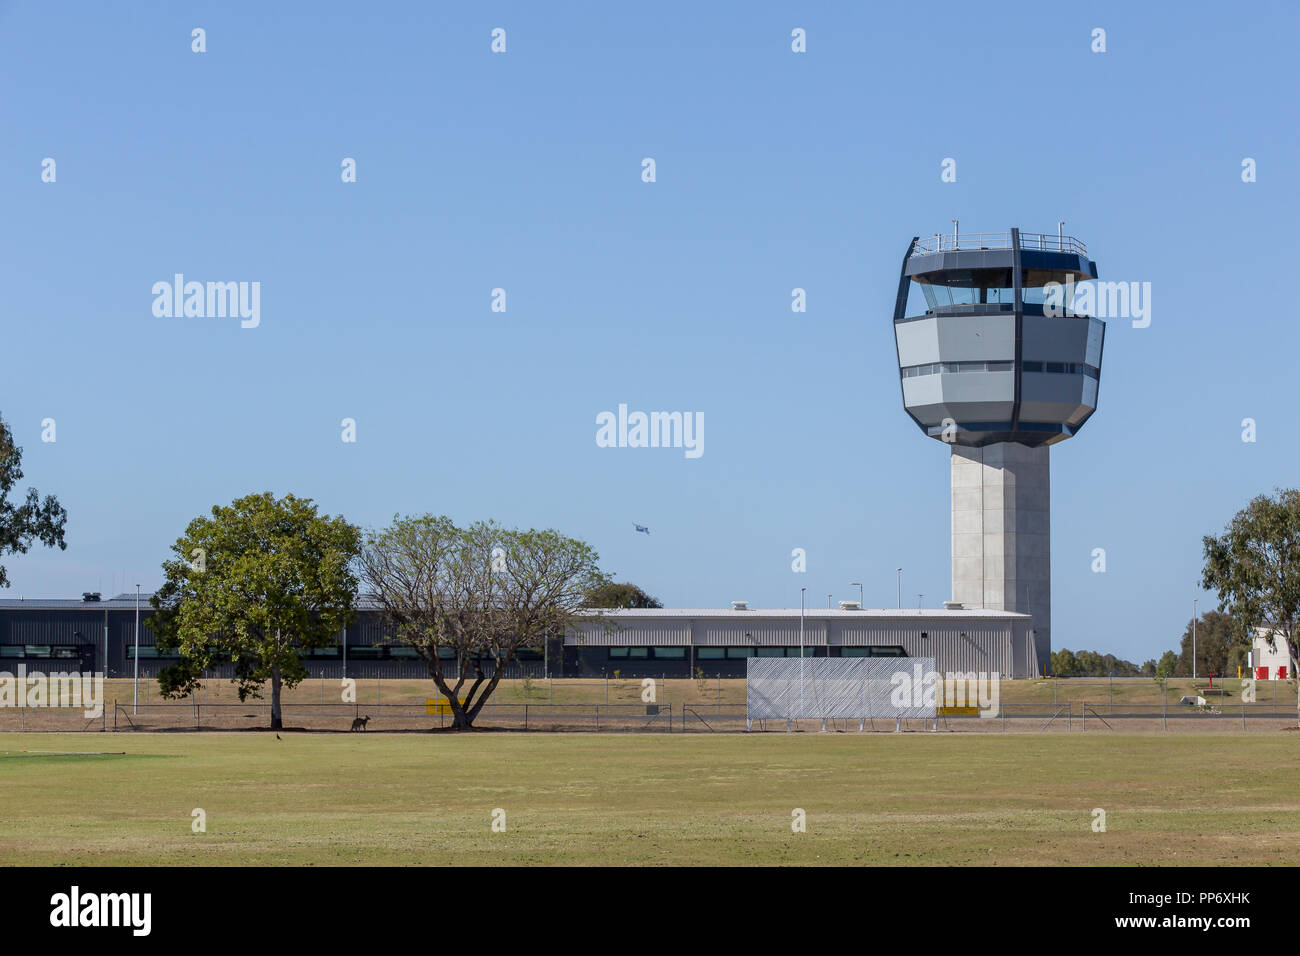 Aeroporto militare, Royal Australian Air Force Base Amberley nuova torre di controllo, un C17 Globemaster prendendo il largo a sinistra della torre. Foto Stock